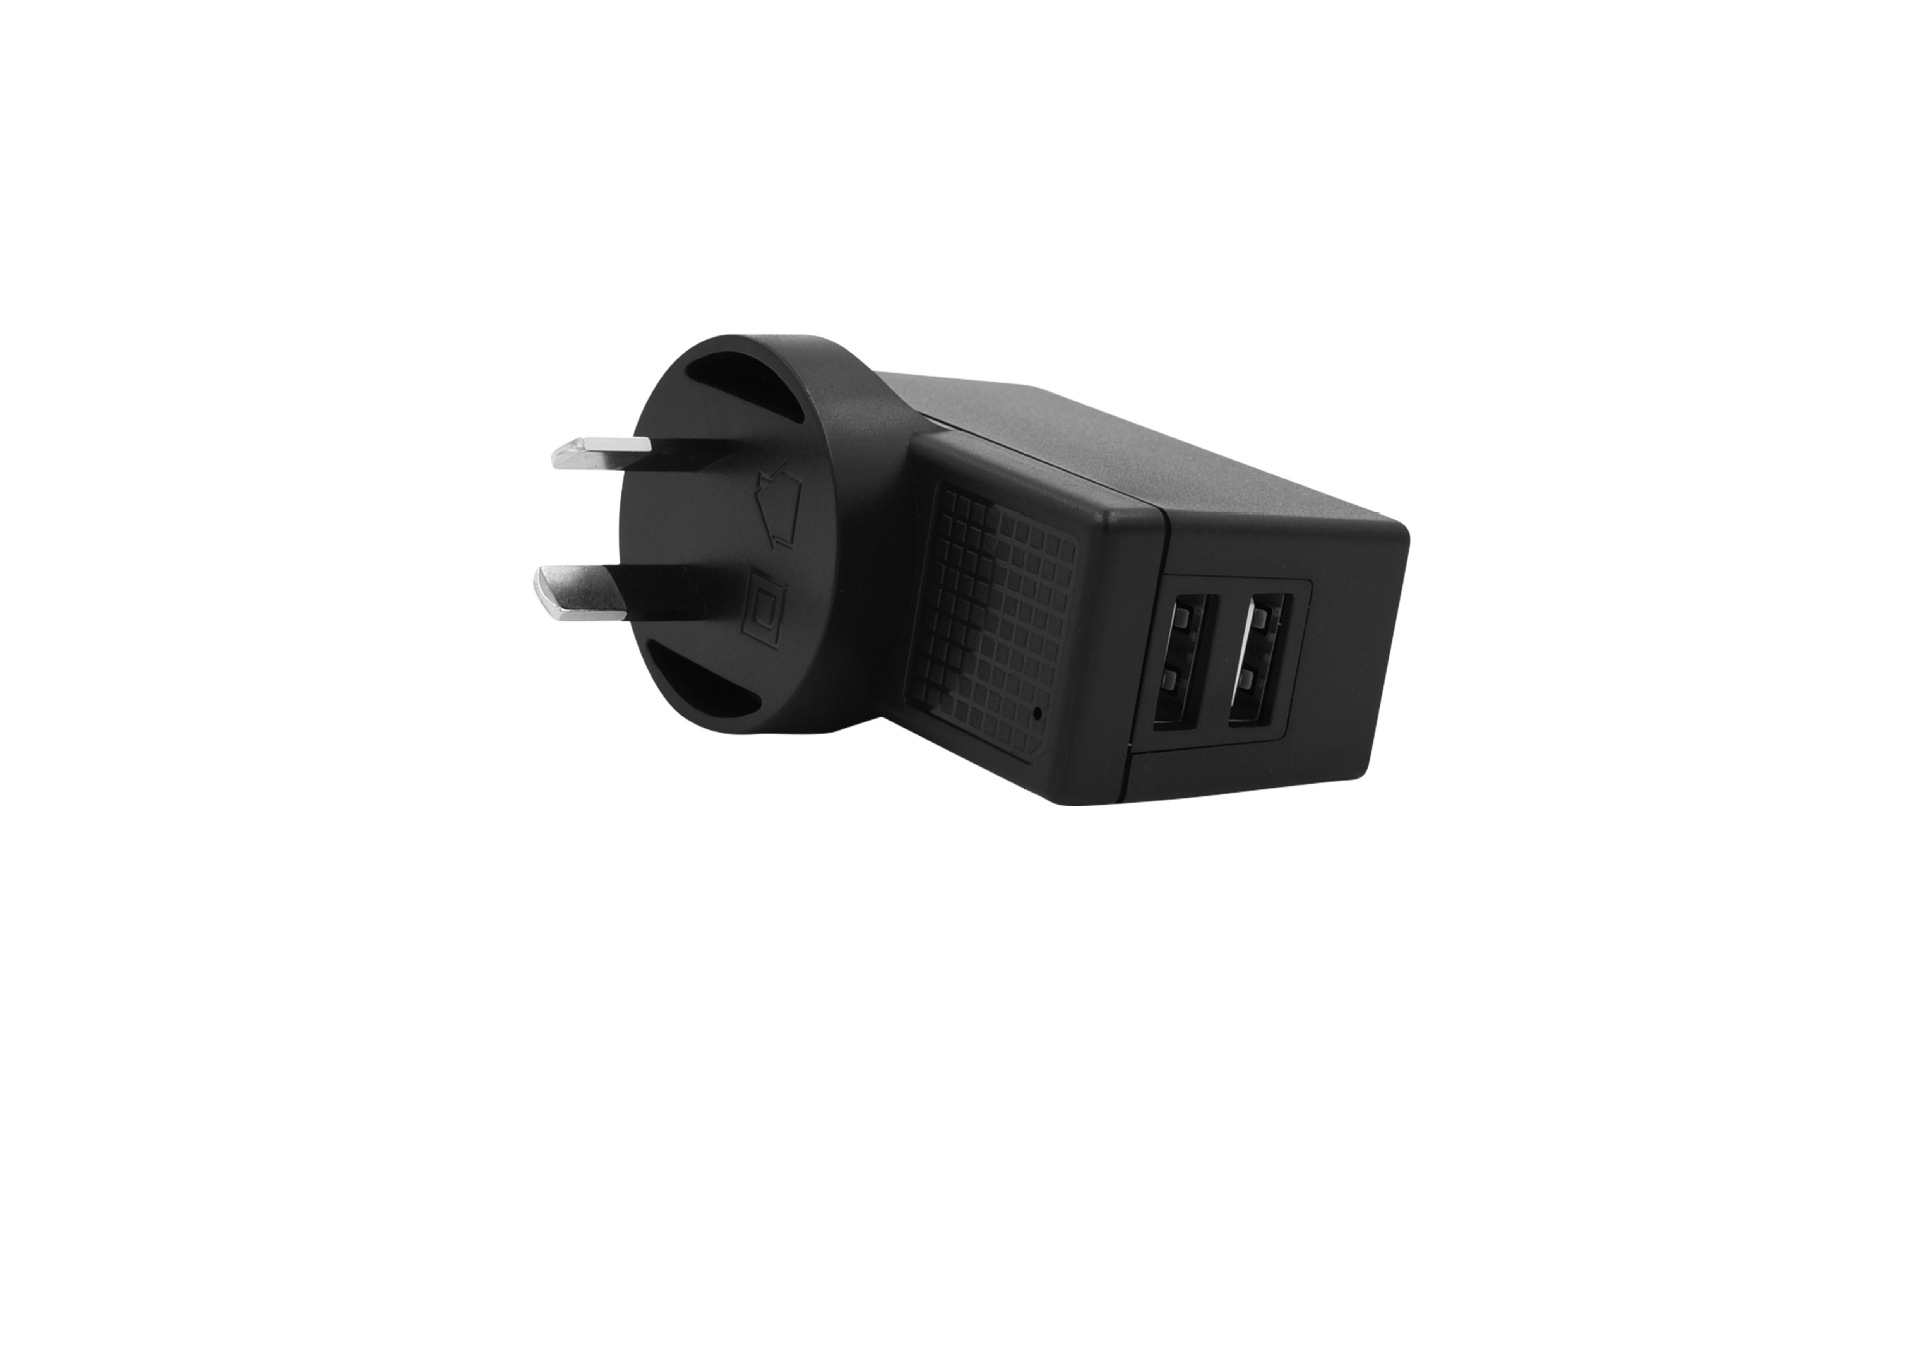 5V3.1A双USB接口澳规白色充电器 过SAA认证 GEMS能效充电器